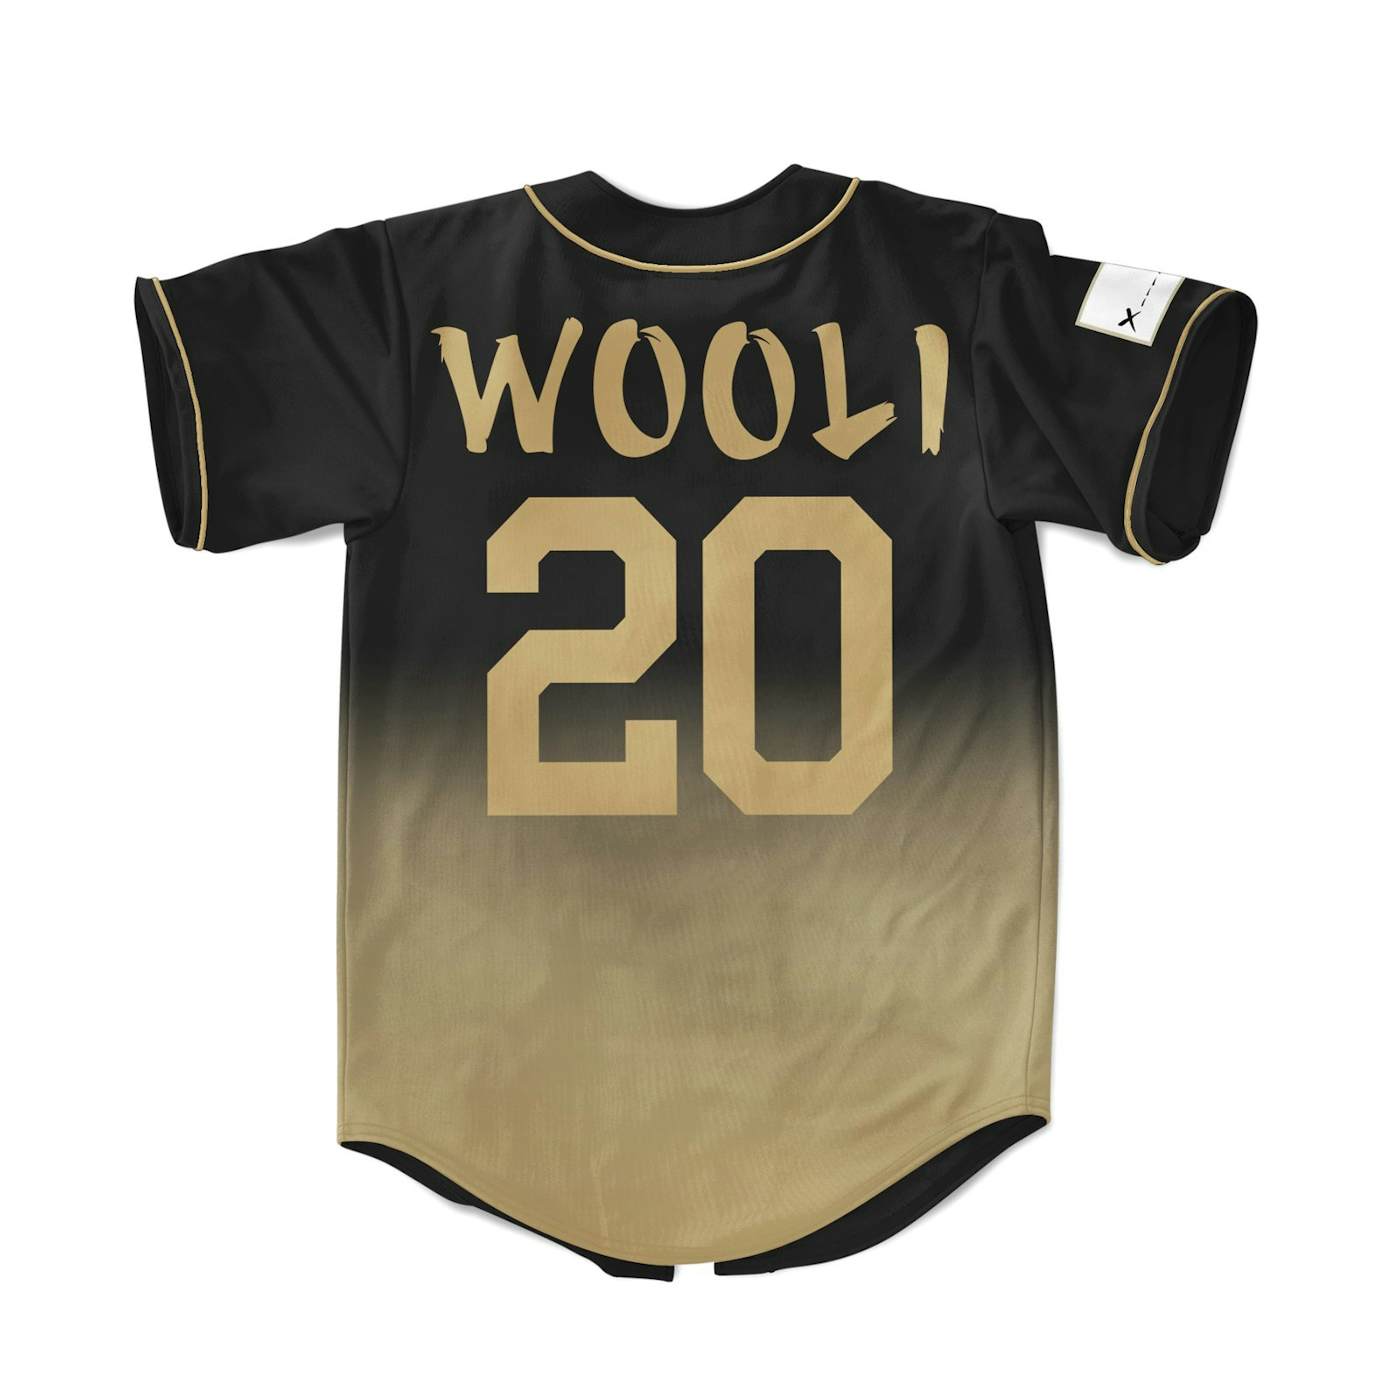 Wooli Signature Series Baseball jersey